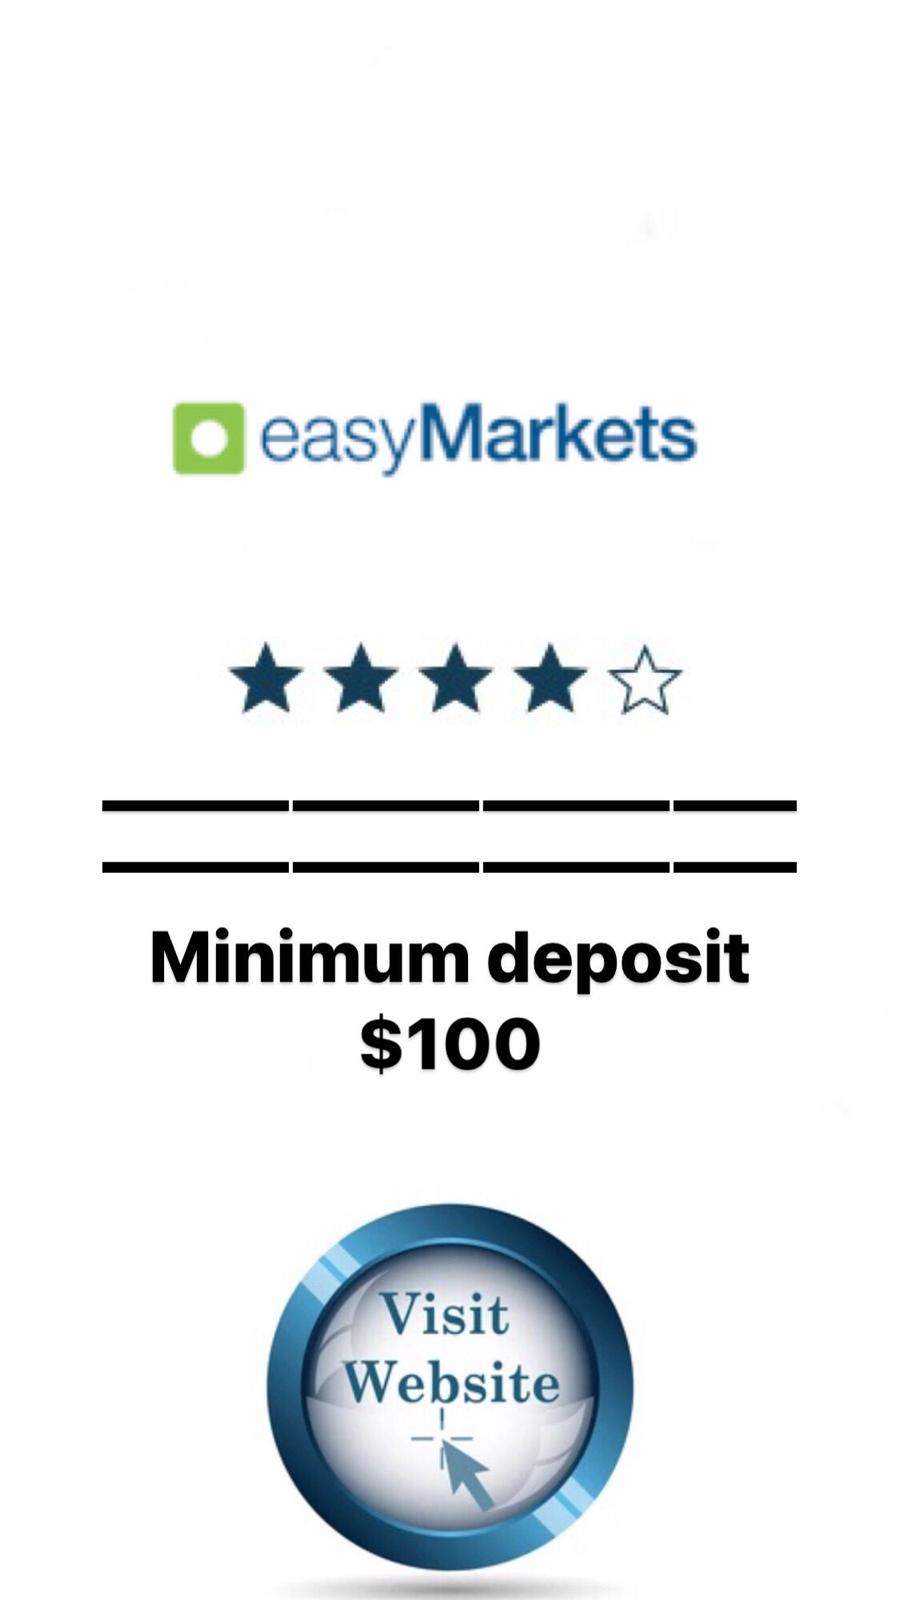 easy Markets